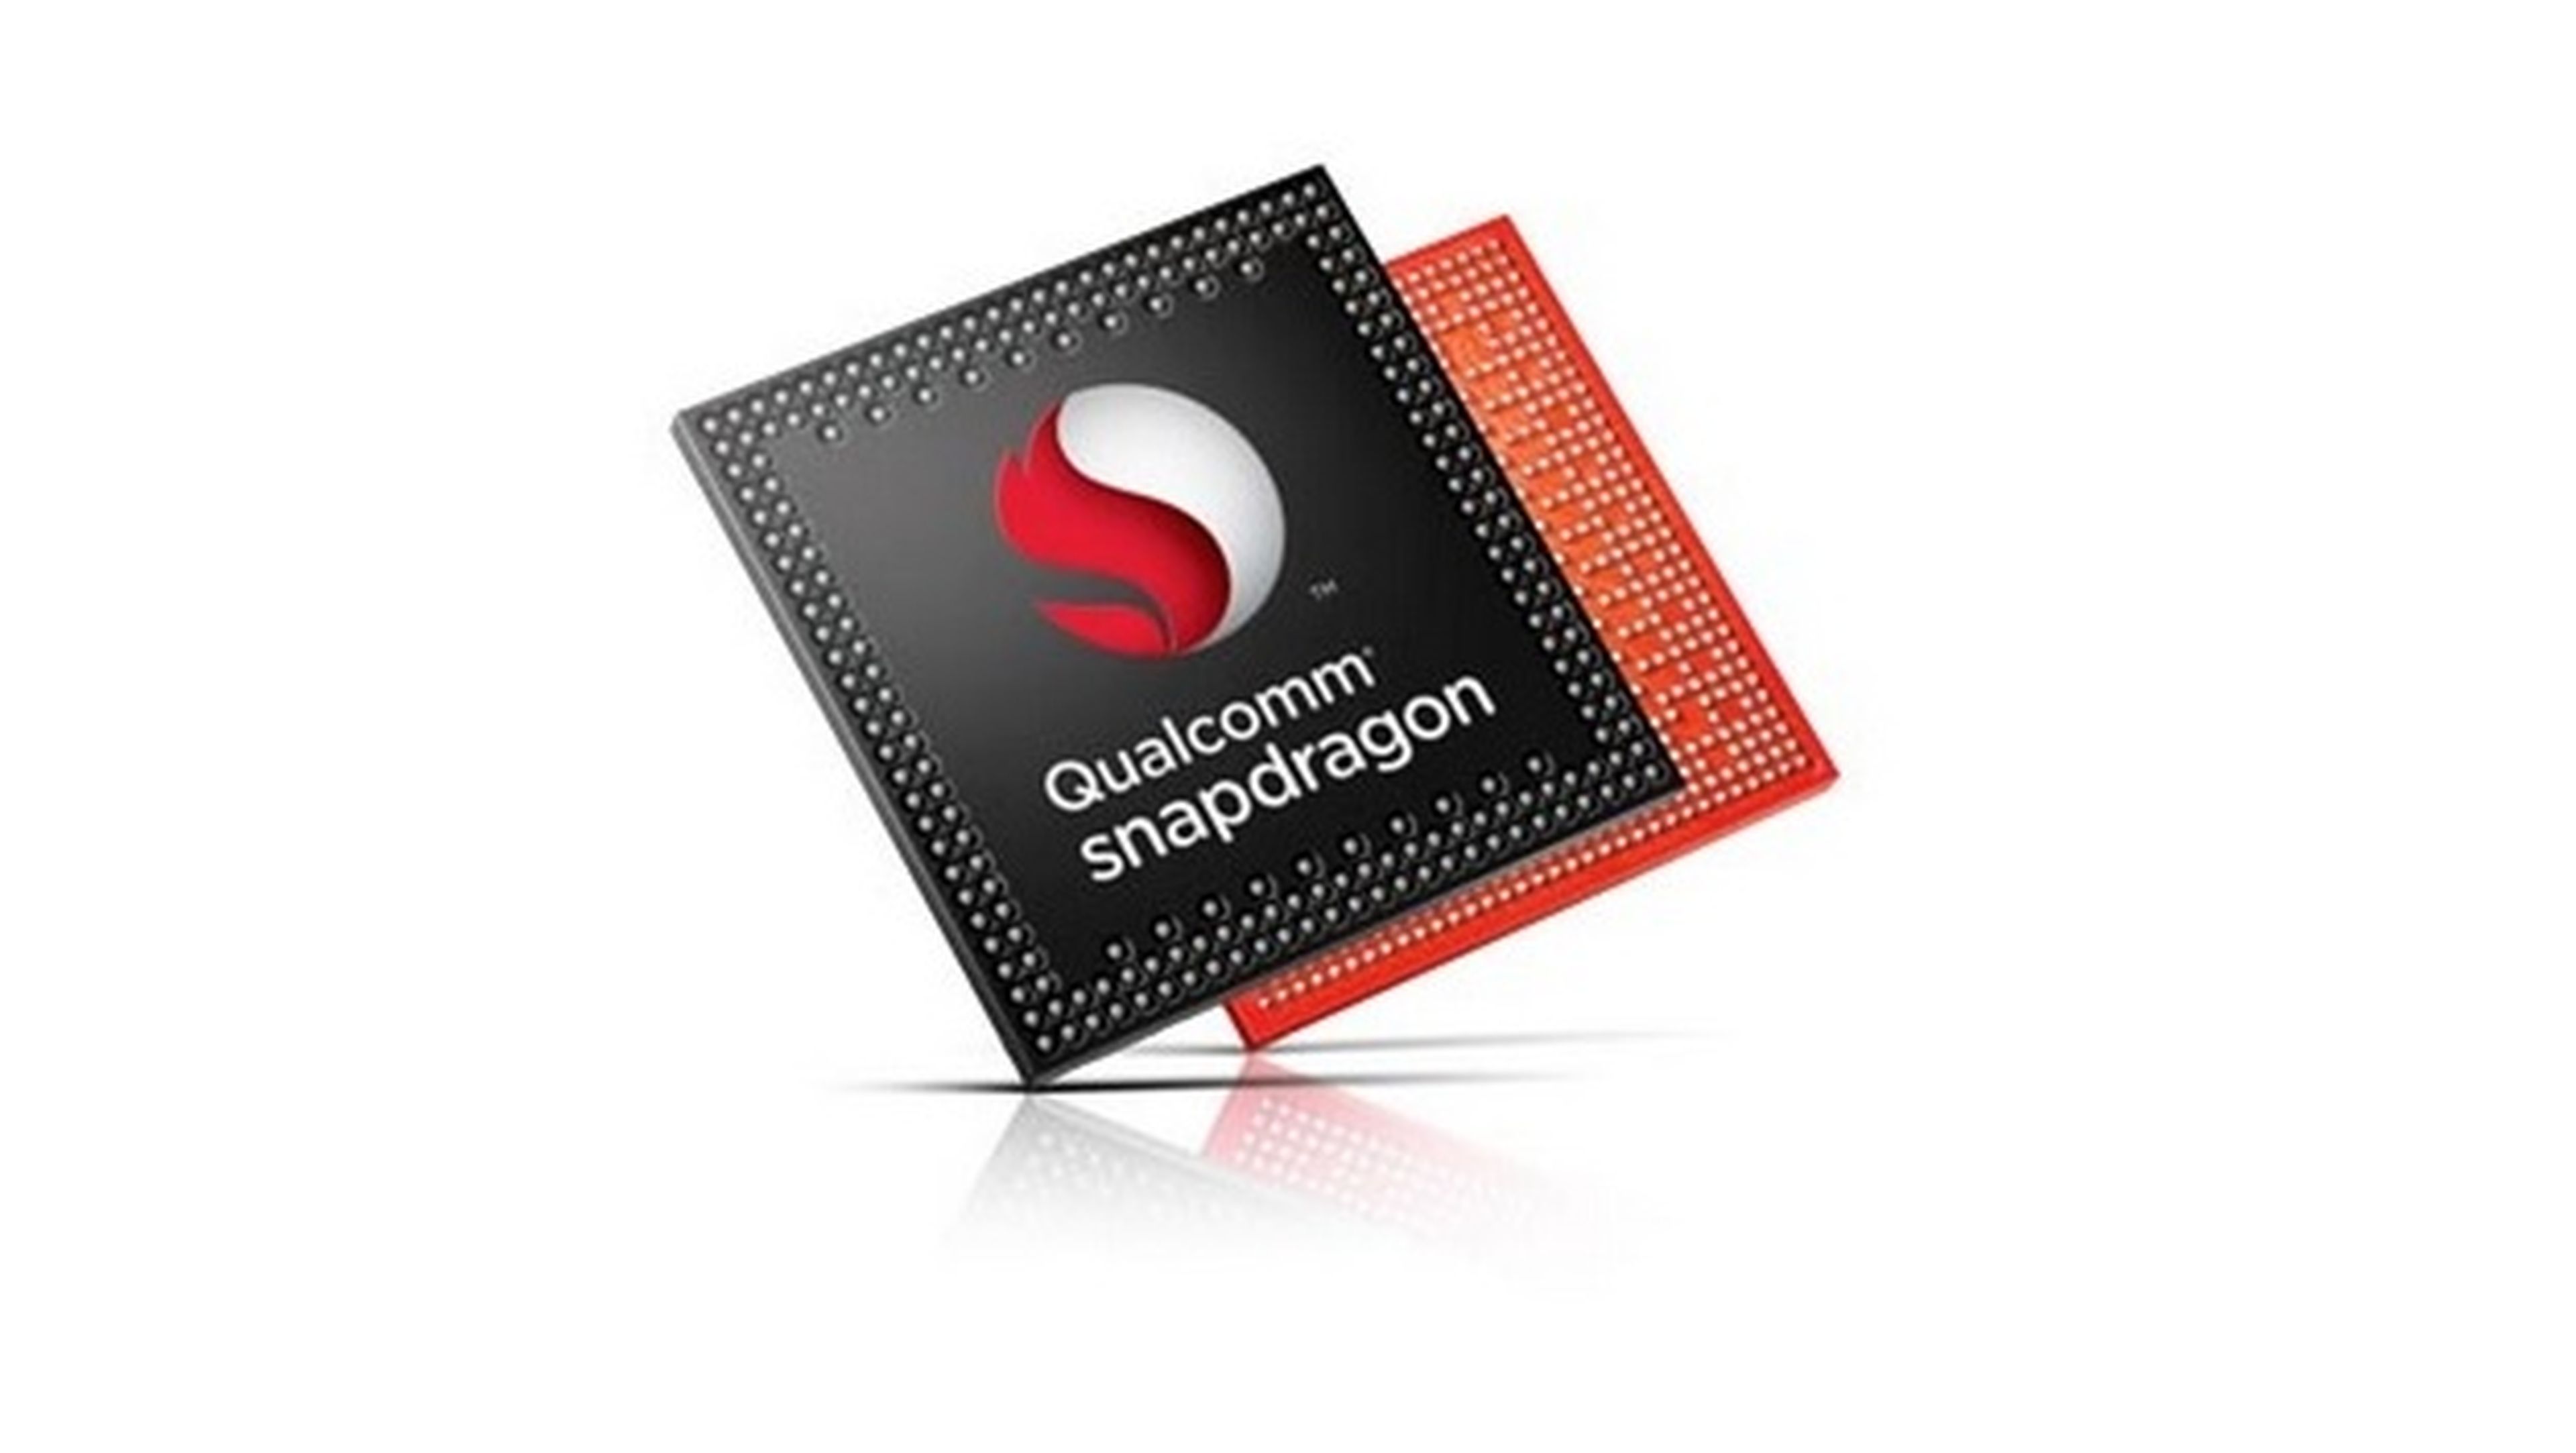 Procesadores Qualcomm SnapDragon 801 y 808